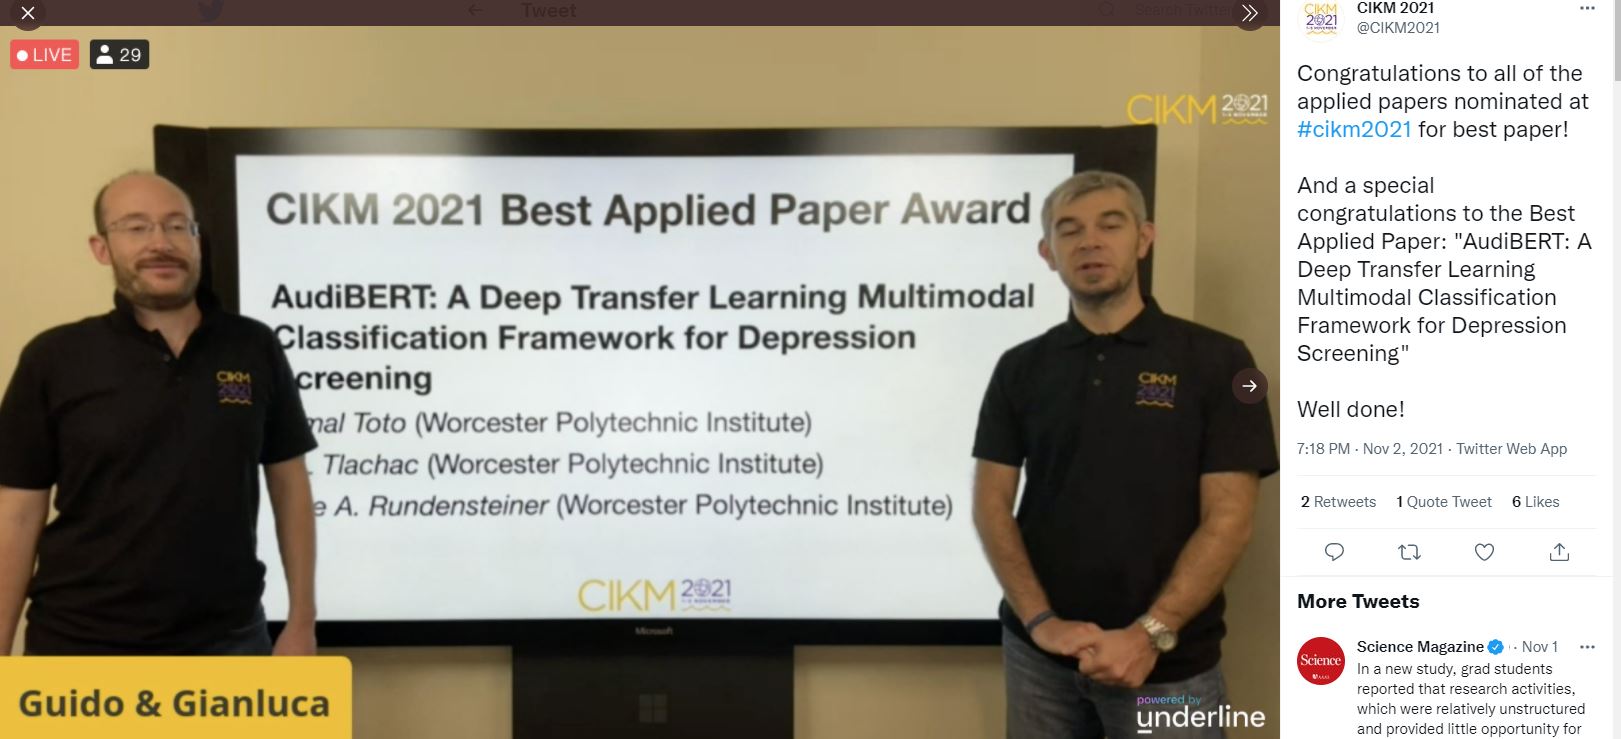 CIKM 2021 Best Applied Paper Award